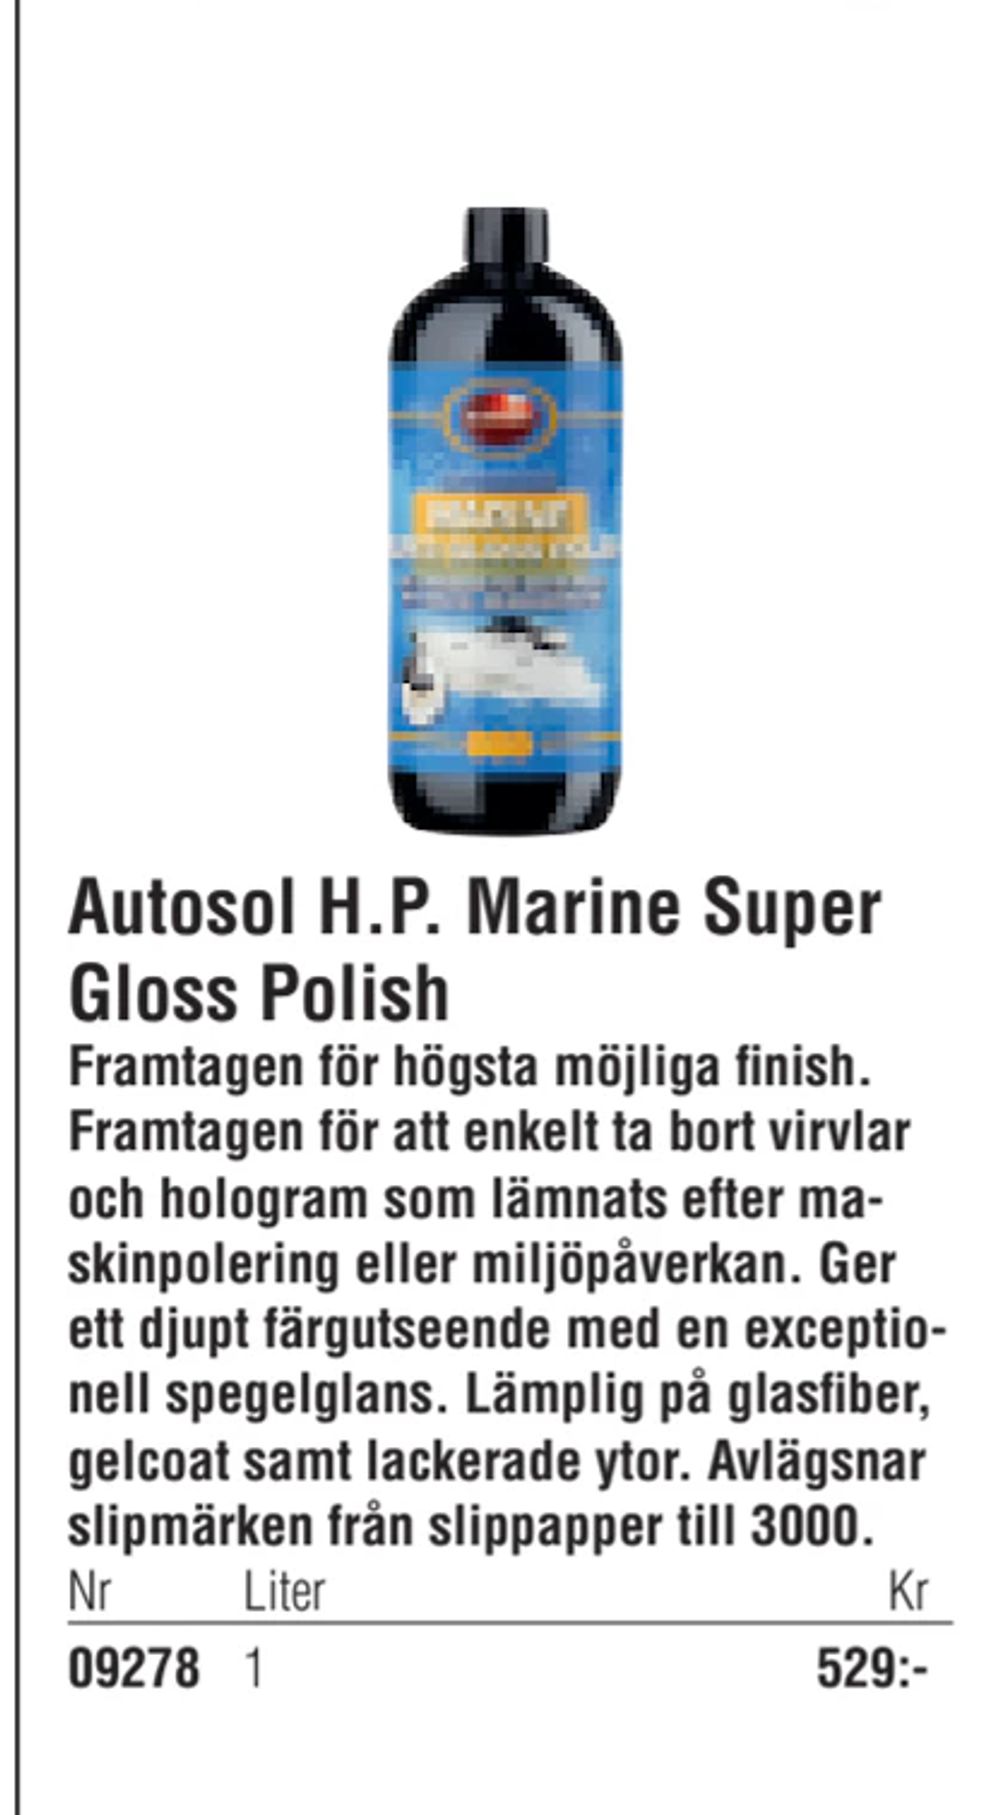 Erbjudanden på Autosol H.P. Marine Super Gloss Polish från Erlandsons Brygga för 529 kr